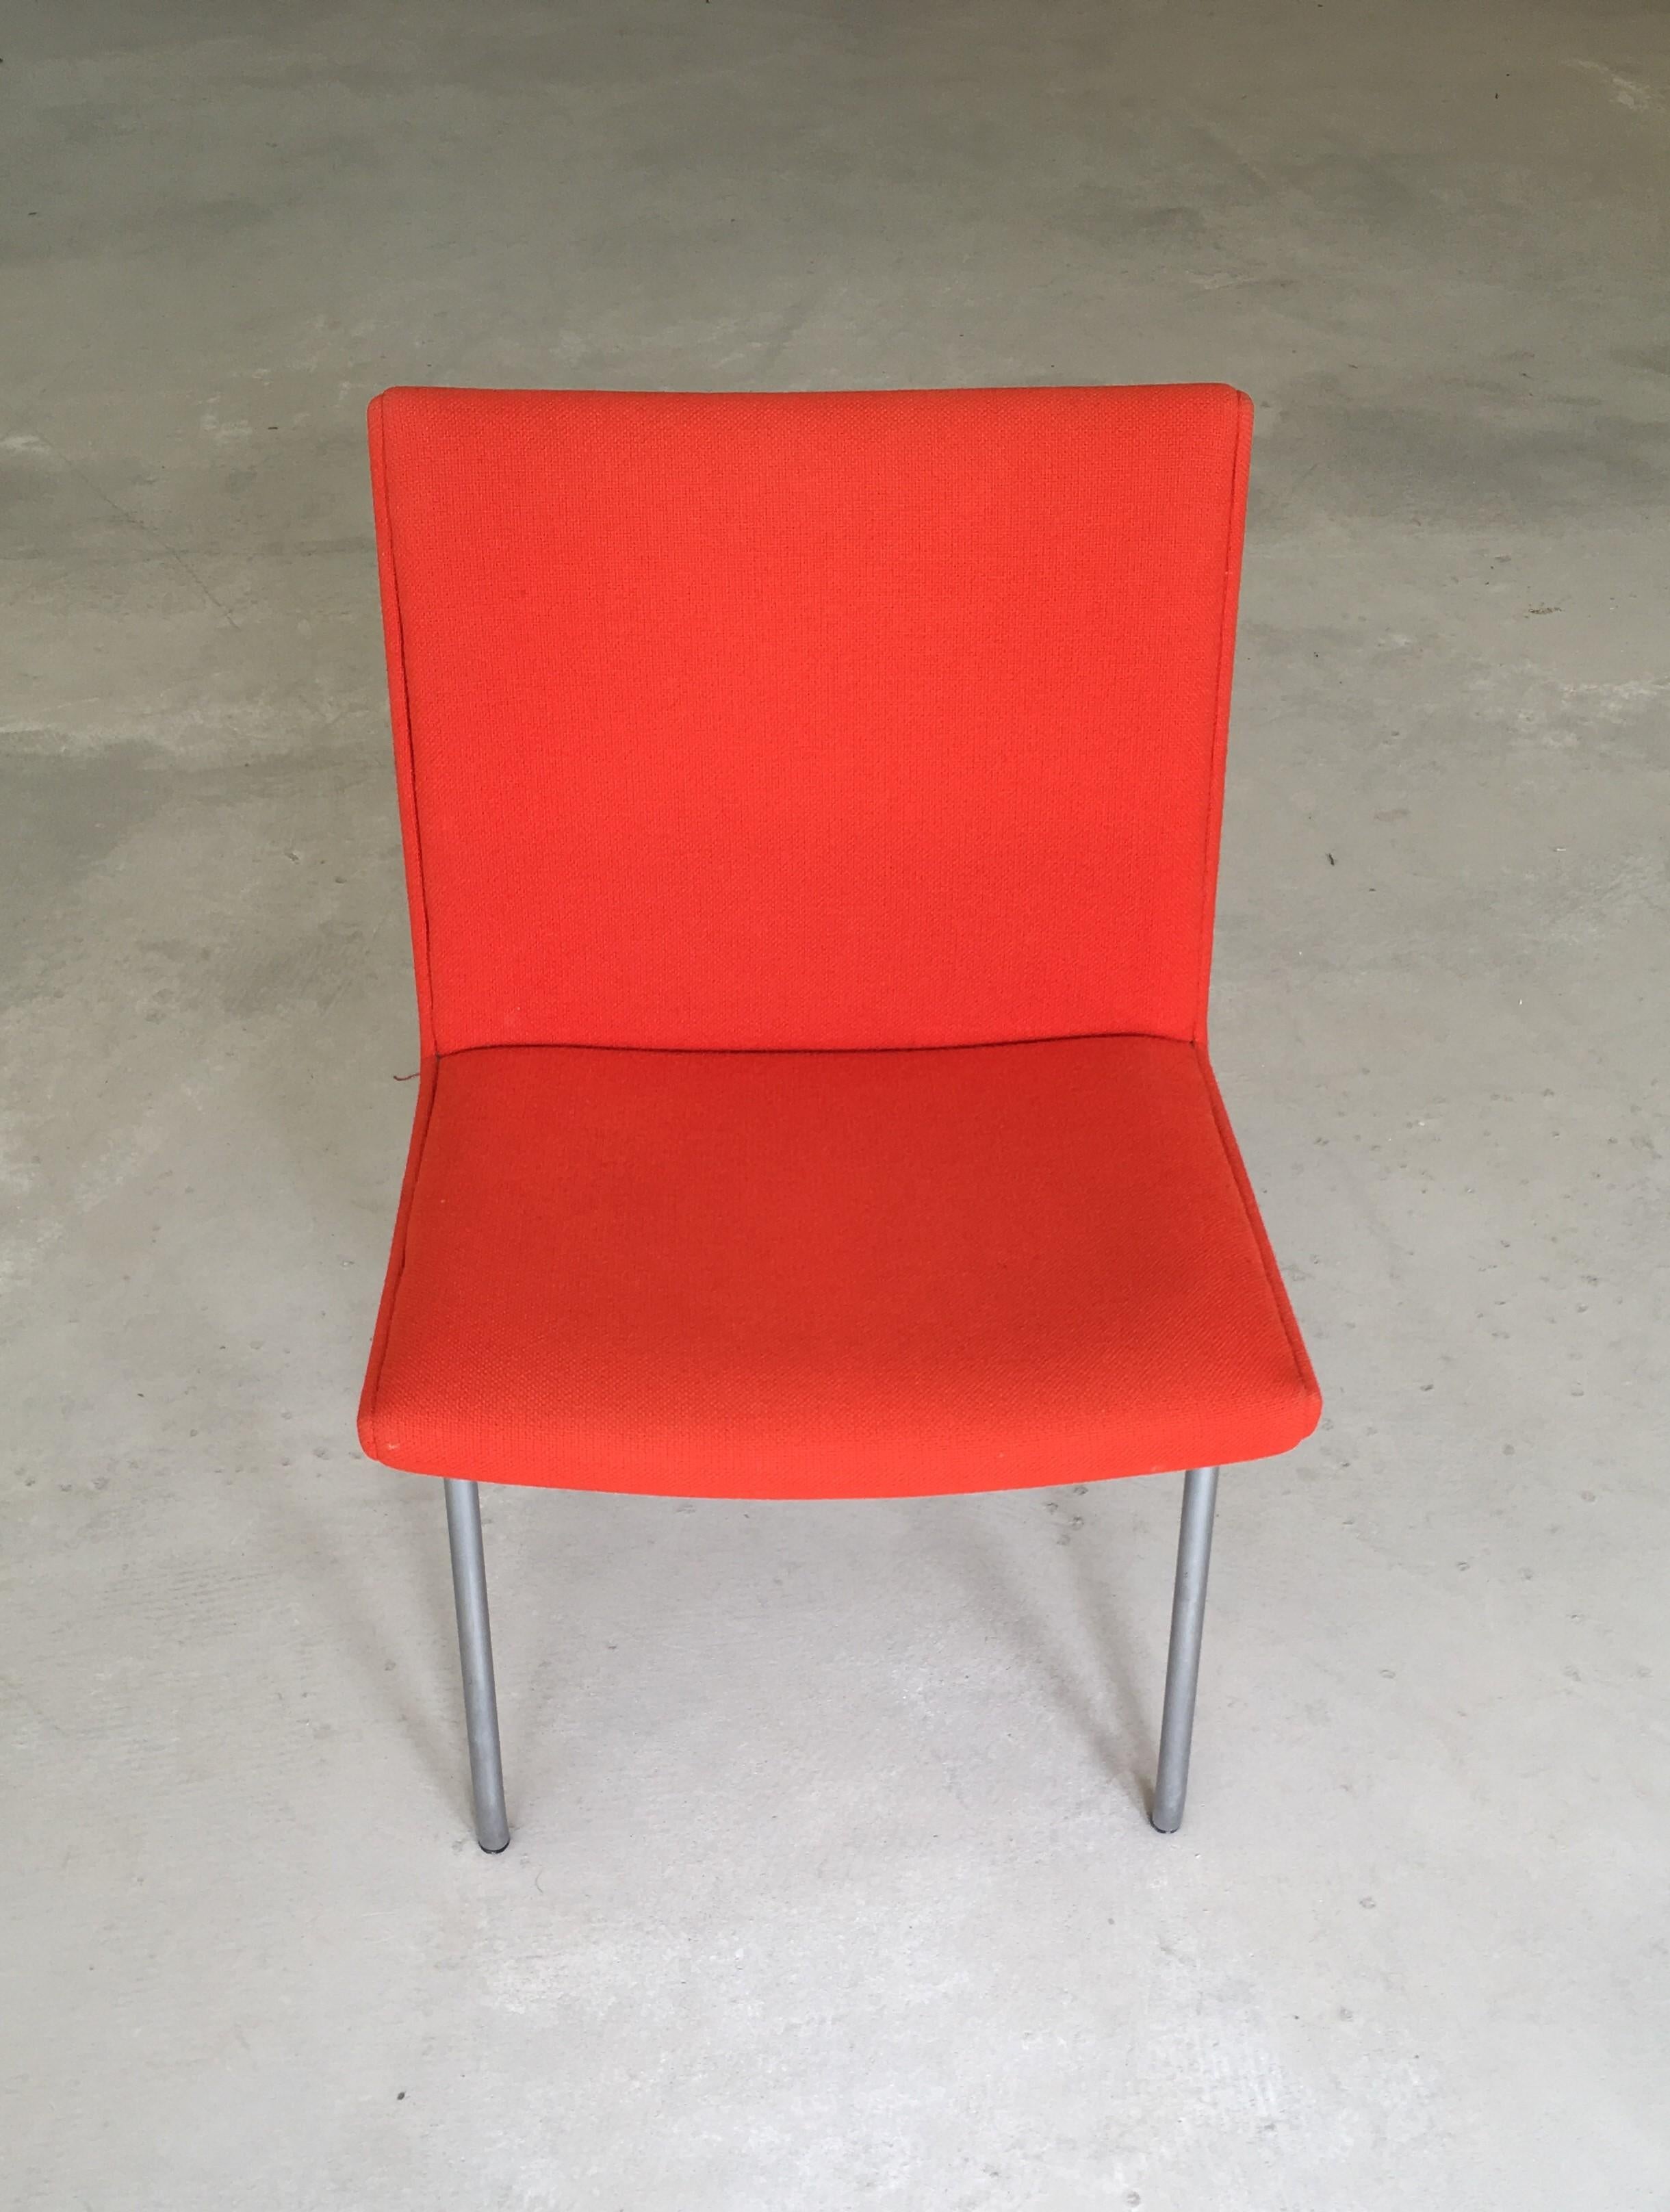 Hans Wegner AP38 'Airport' Stuhl von A.P. Gestohlen.

Außergewöhnlicher moderner Stuhl. Entworfen 1958, auf Stahlrohrrahmen mit scharfer Dreiecks-Bumerangform. Die Sitze wurden mit orangefarbenem Kvadrat Hallingdal 65 neu gepolstert. 

Obwohl dieser